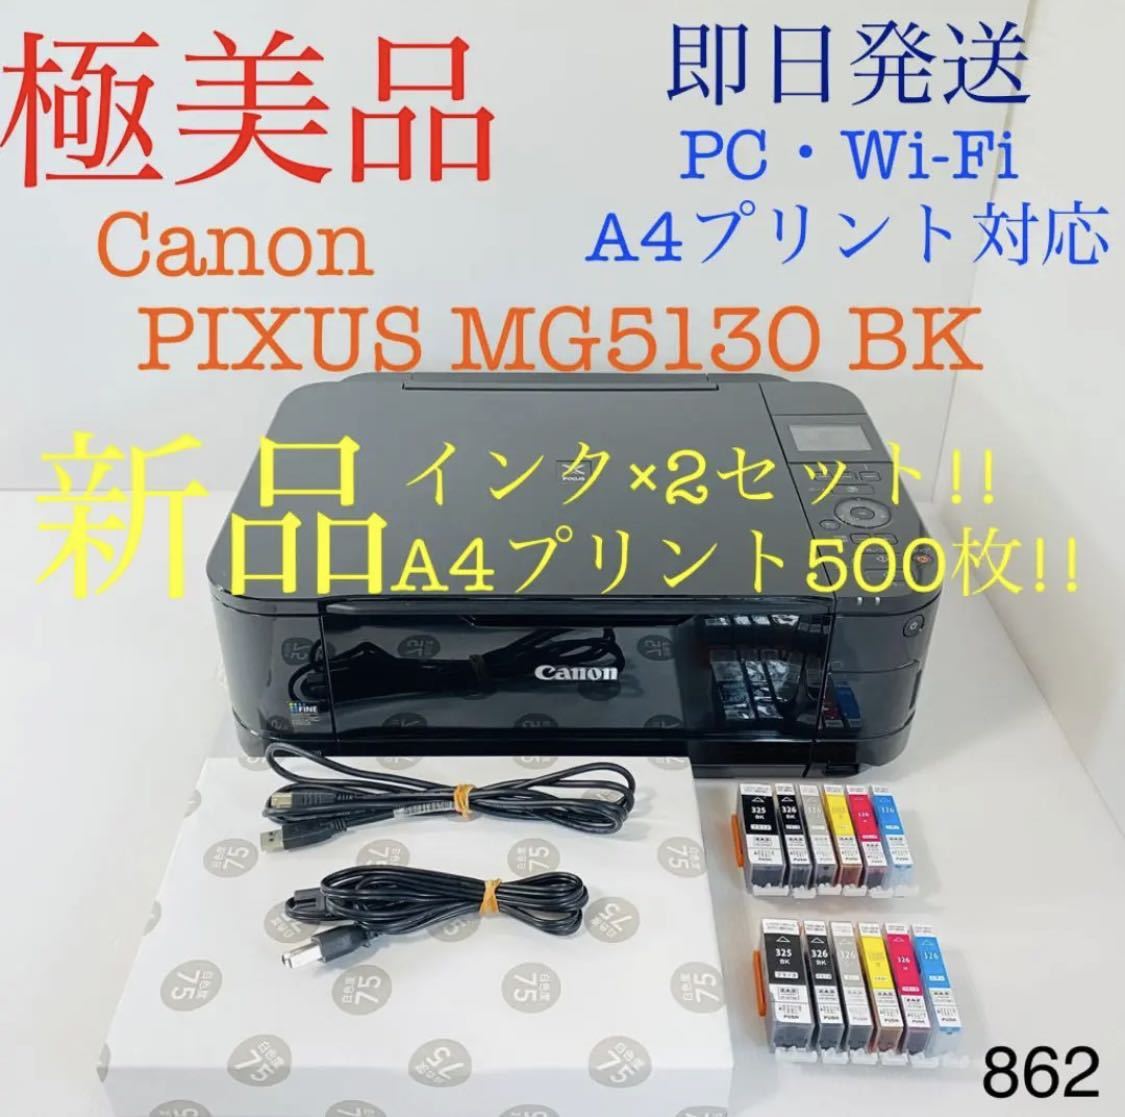 ★プリンター専門店★【即日発送】MG5130 ブラック Canon プリンター インクジェット 